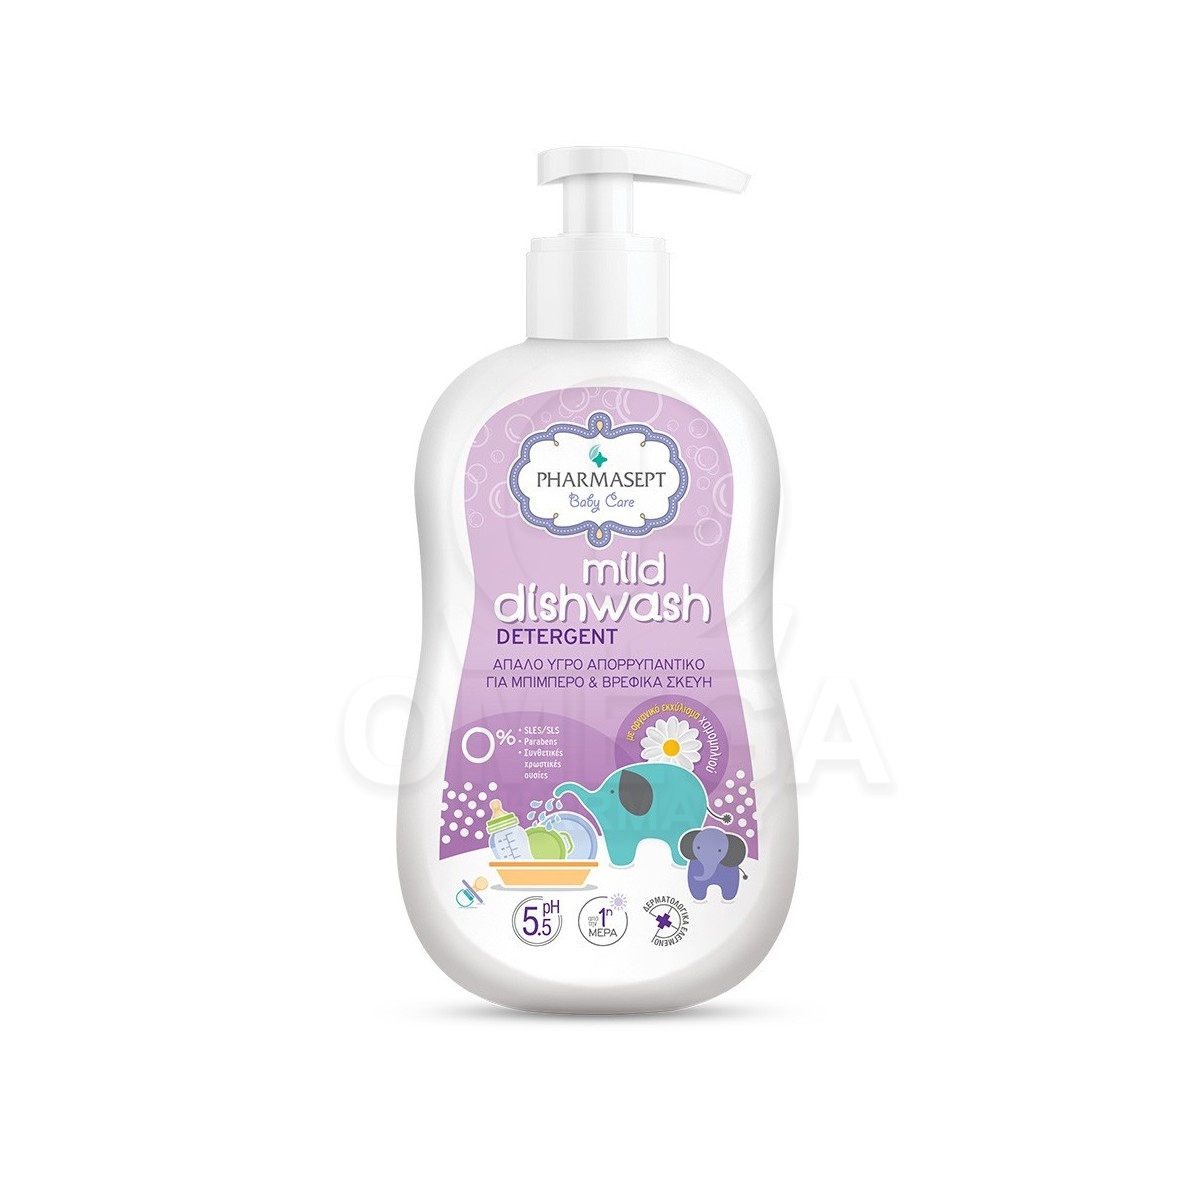 Απορρυπαντικο - PHARMASEPT Baby Care Mild Dishwash Detergent Απαλό Υγρό  Απορρυπαντικό για Μπιμπερό &amp; Βρεφικά Σκεύη με Καθαρι